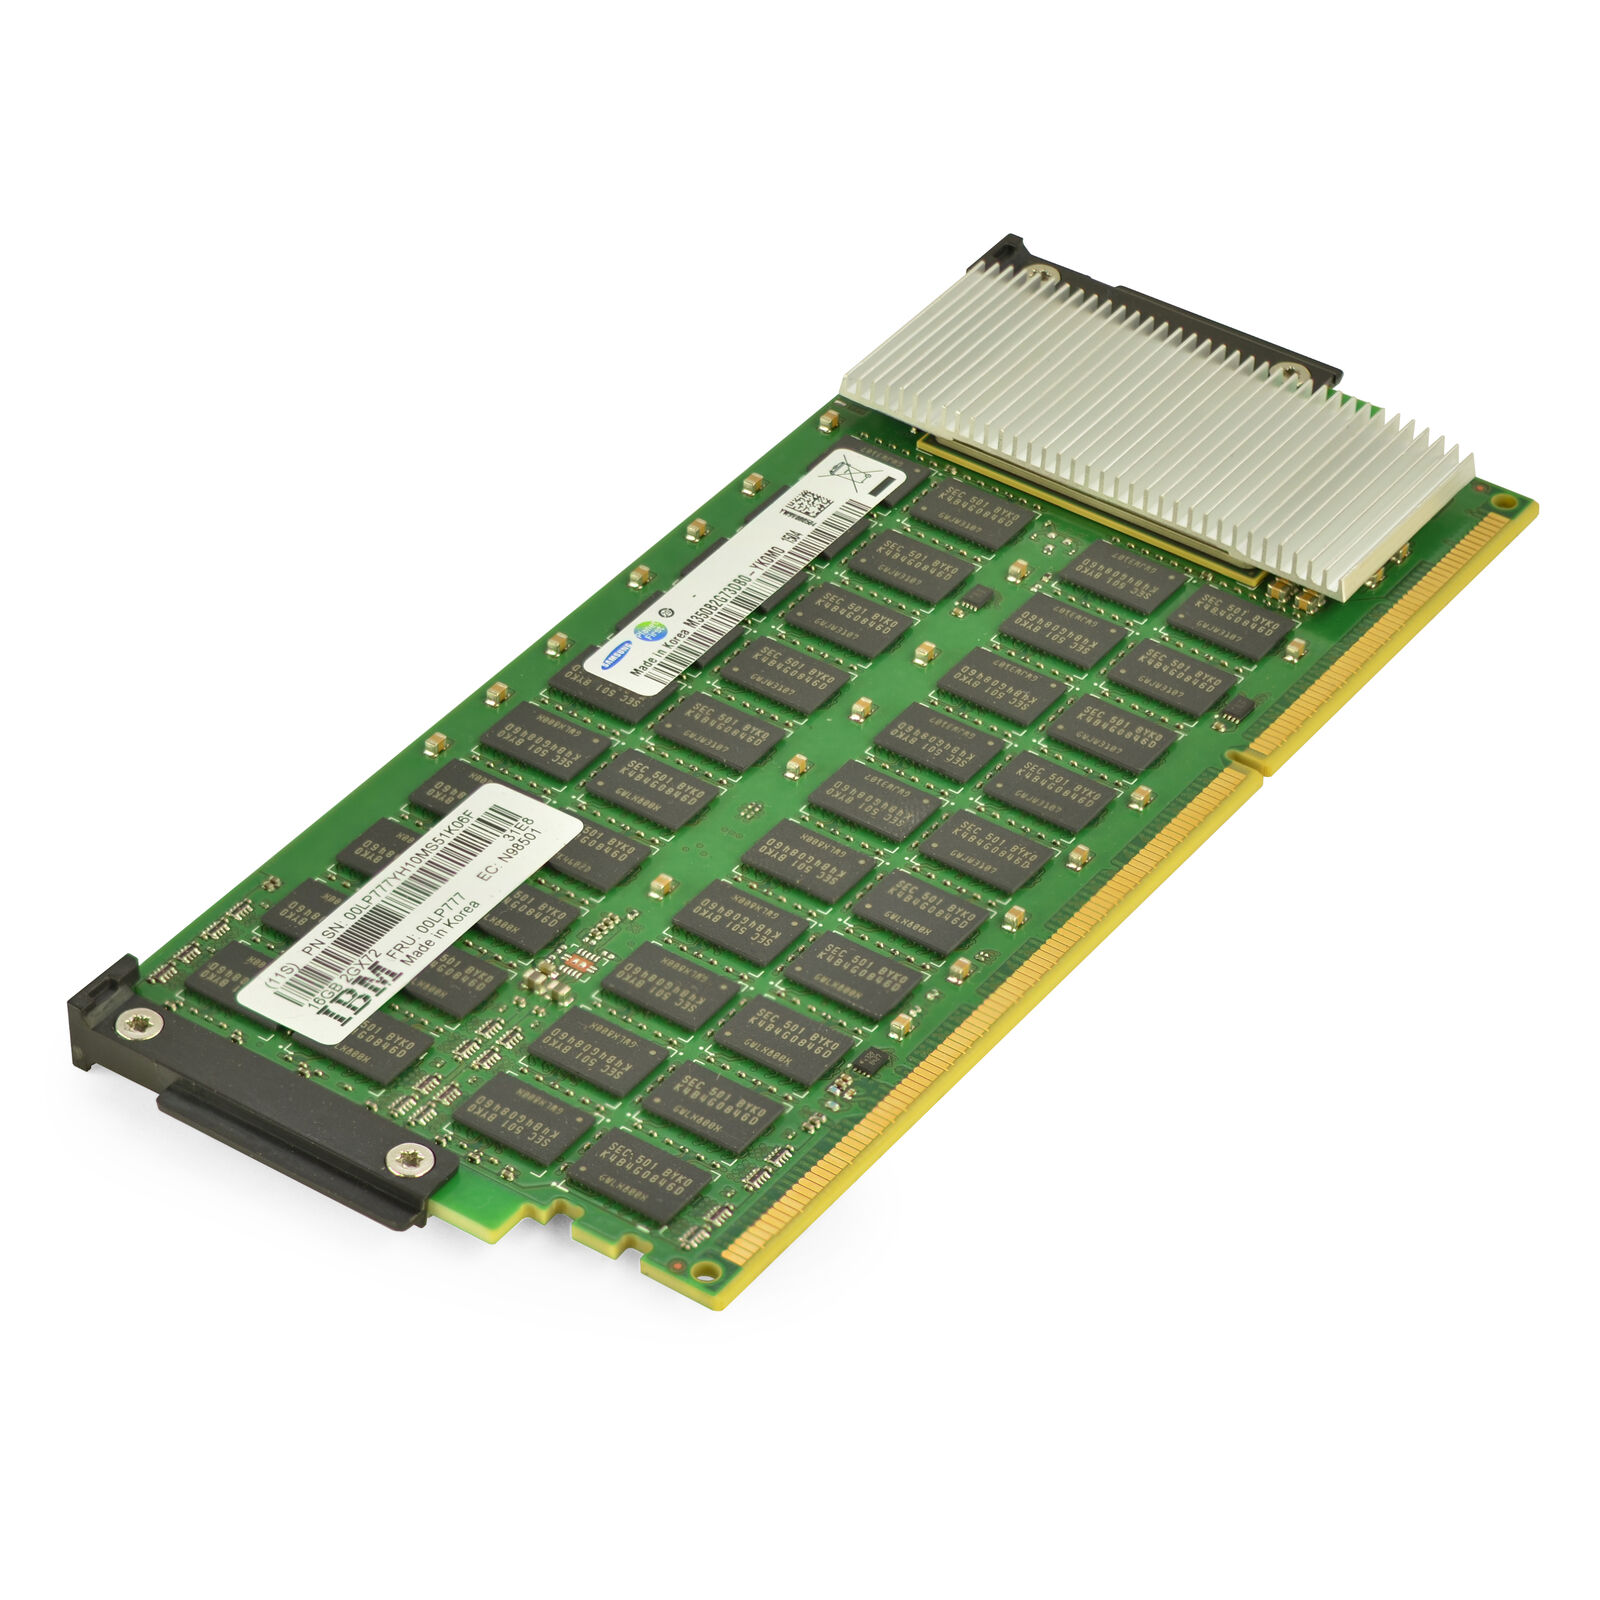 IBM 00LP777 Power8 16GB CDIMM DDR3 Memory M350B2G73DB0-YK0M0